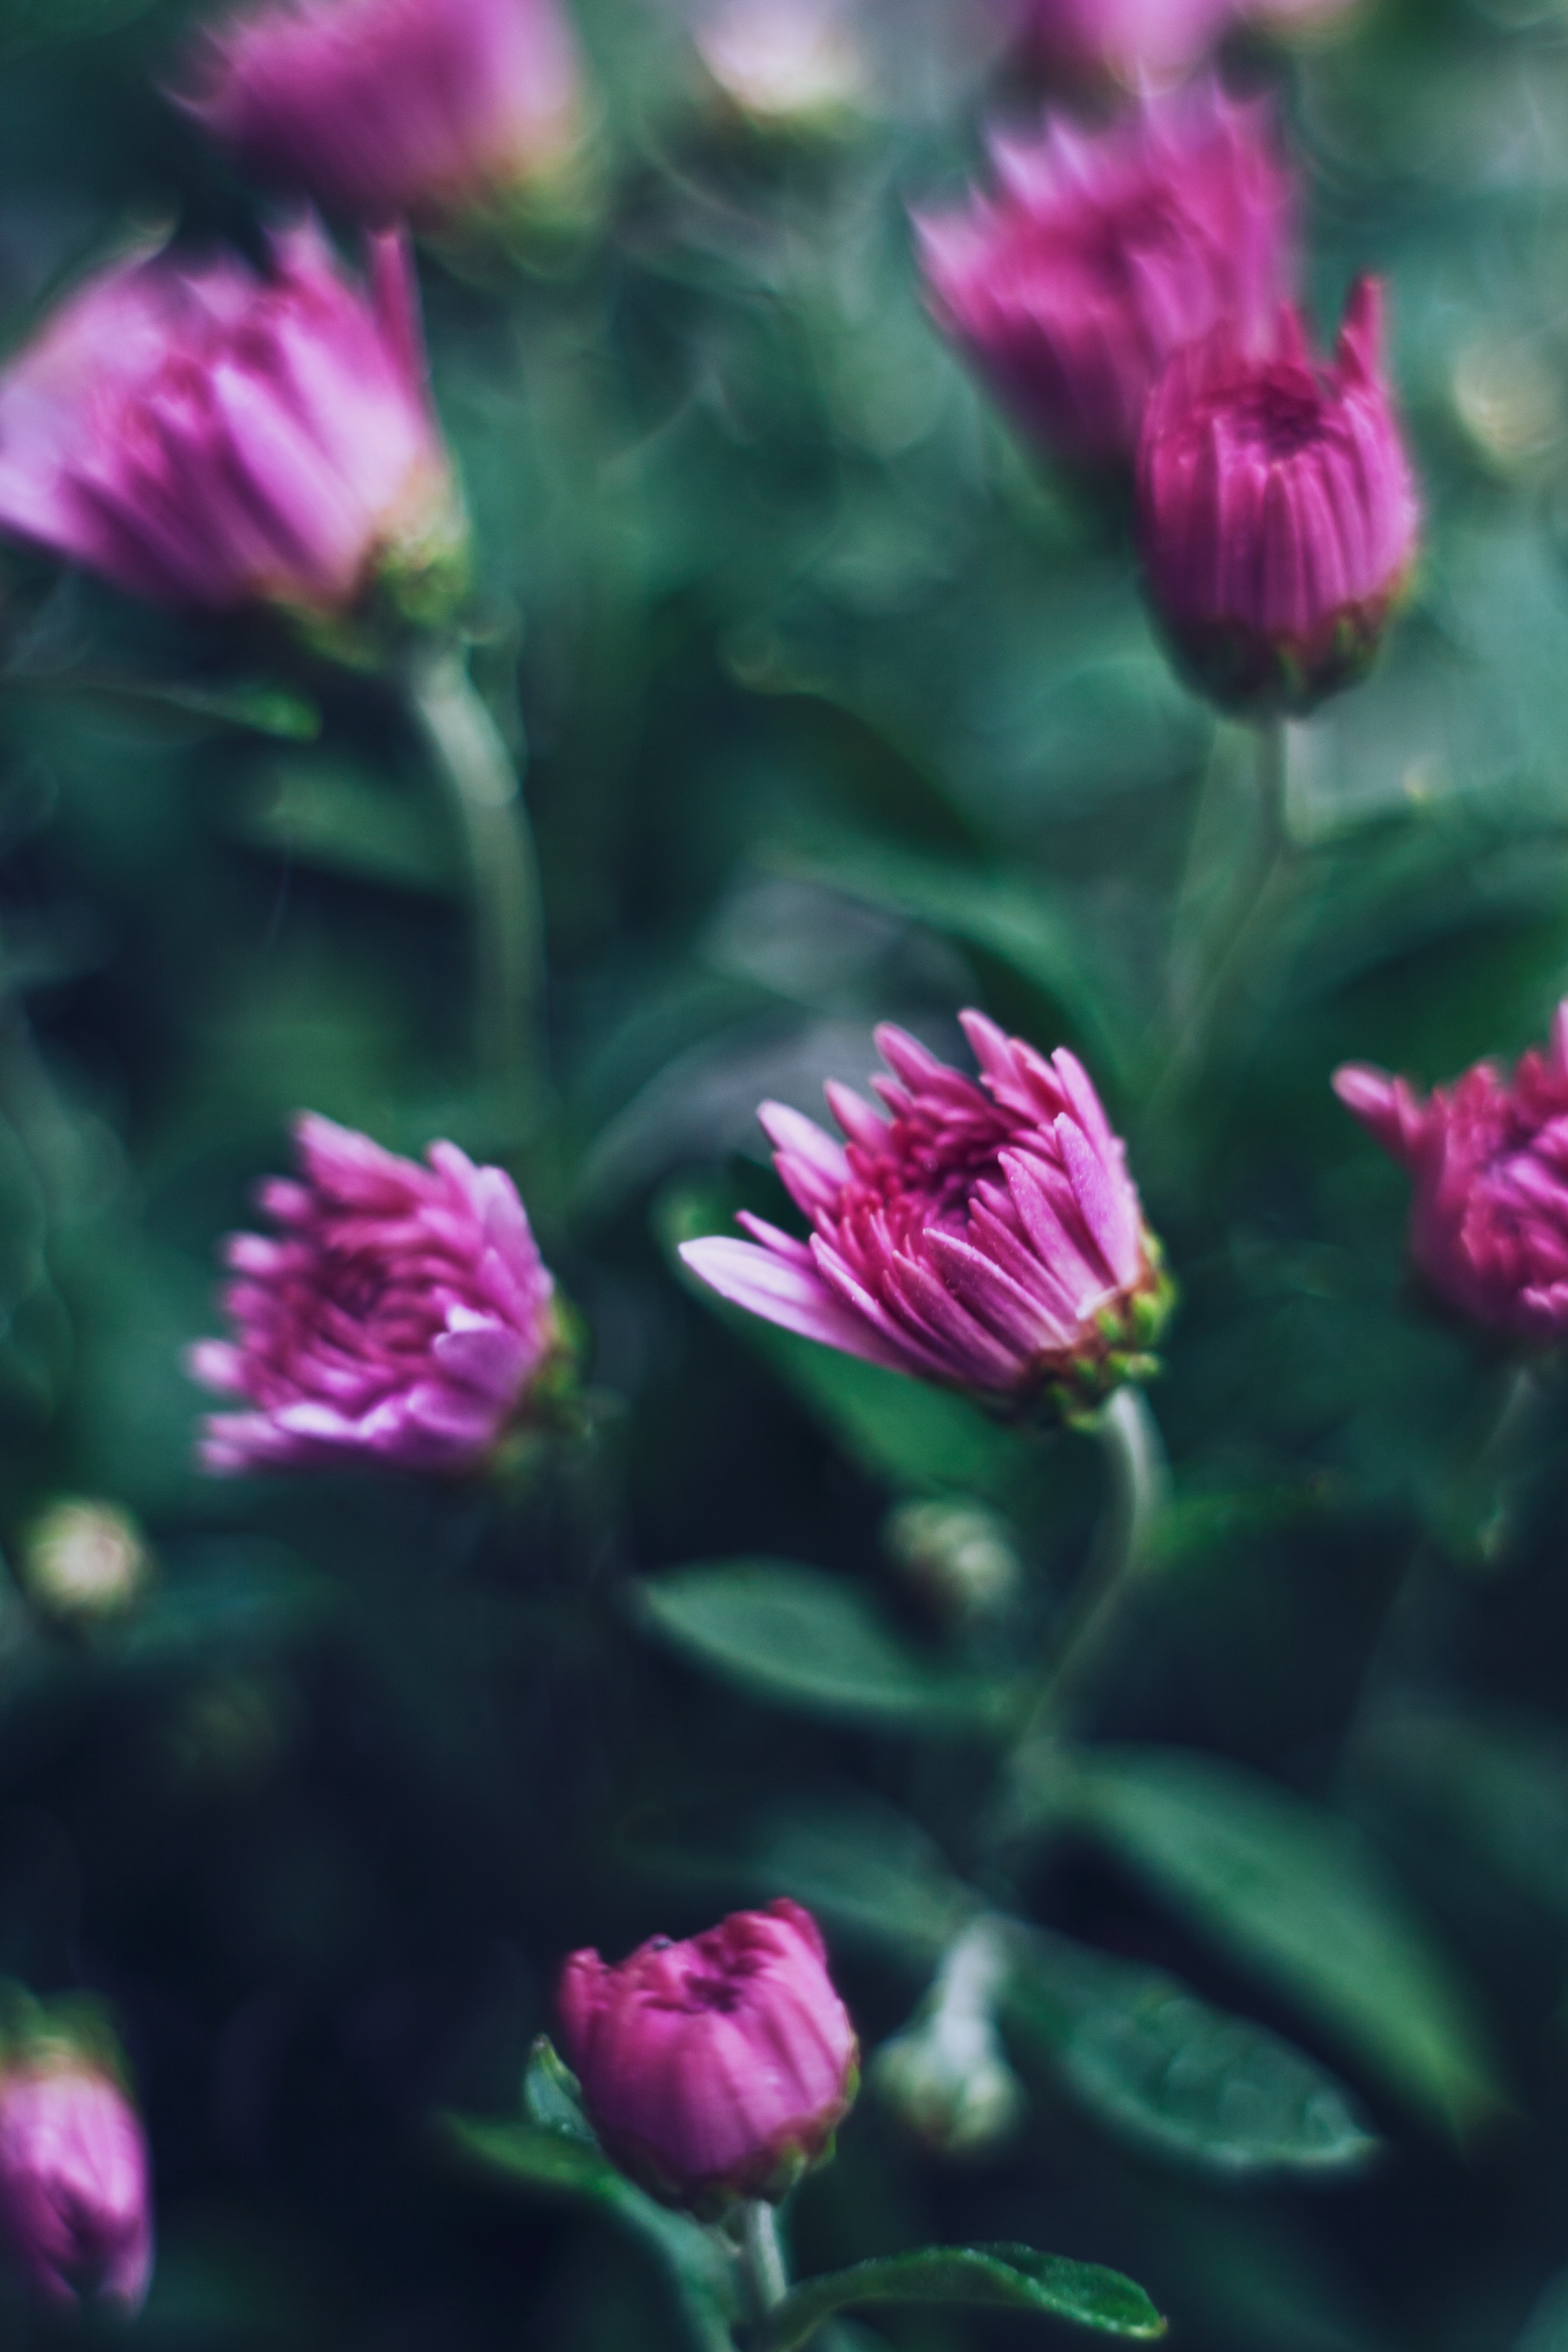 Chrysanthemum photo